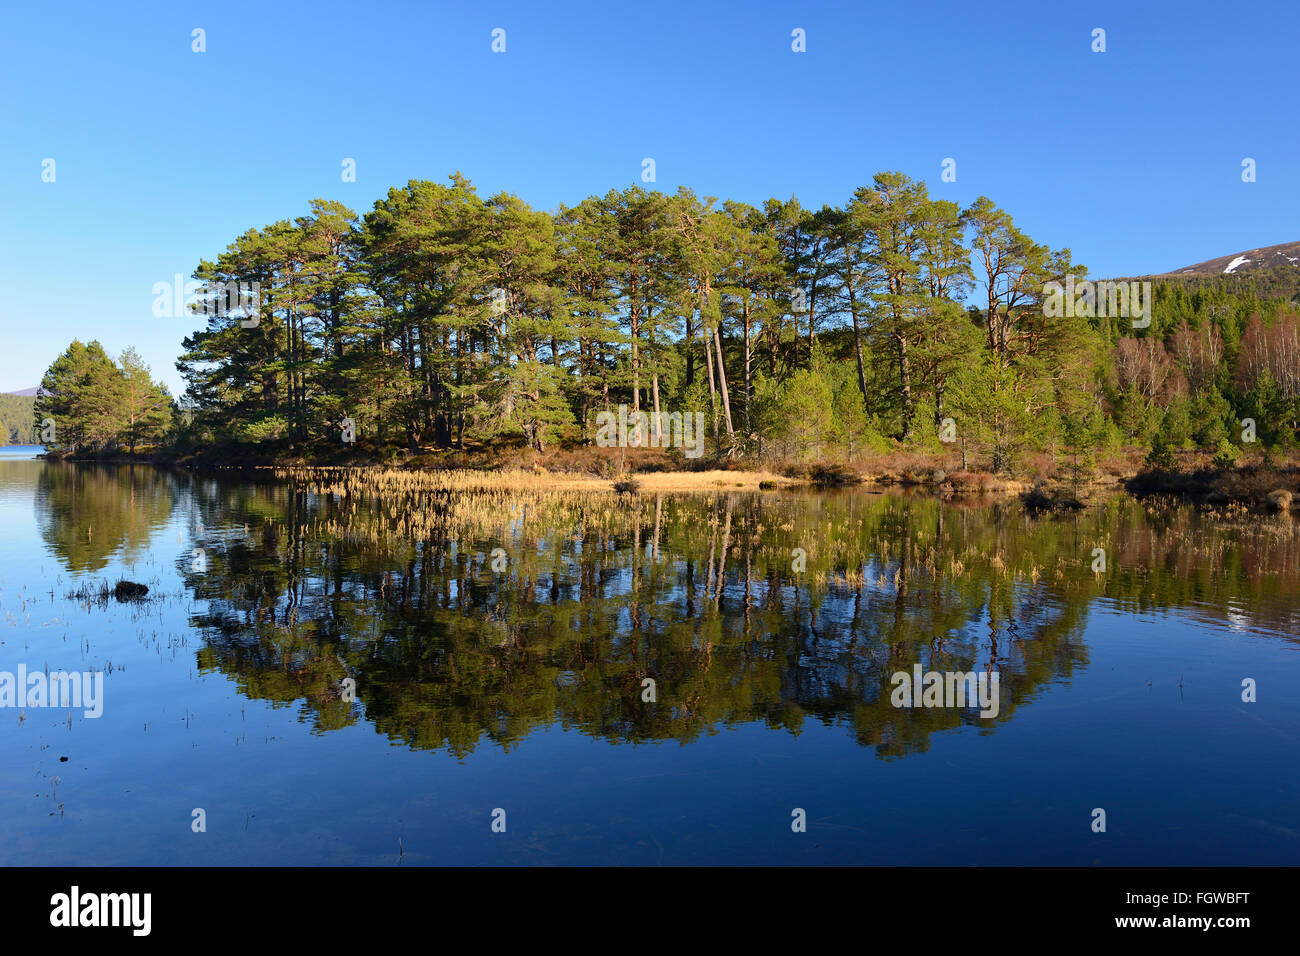 Scots pine forest on banks of Loch an Eilein, Rothiemurchus Estate, Scottish Highlands, UK Stock Photo